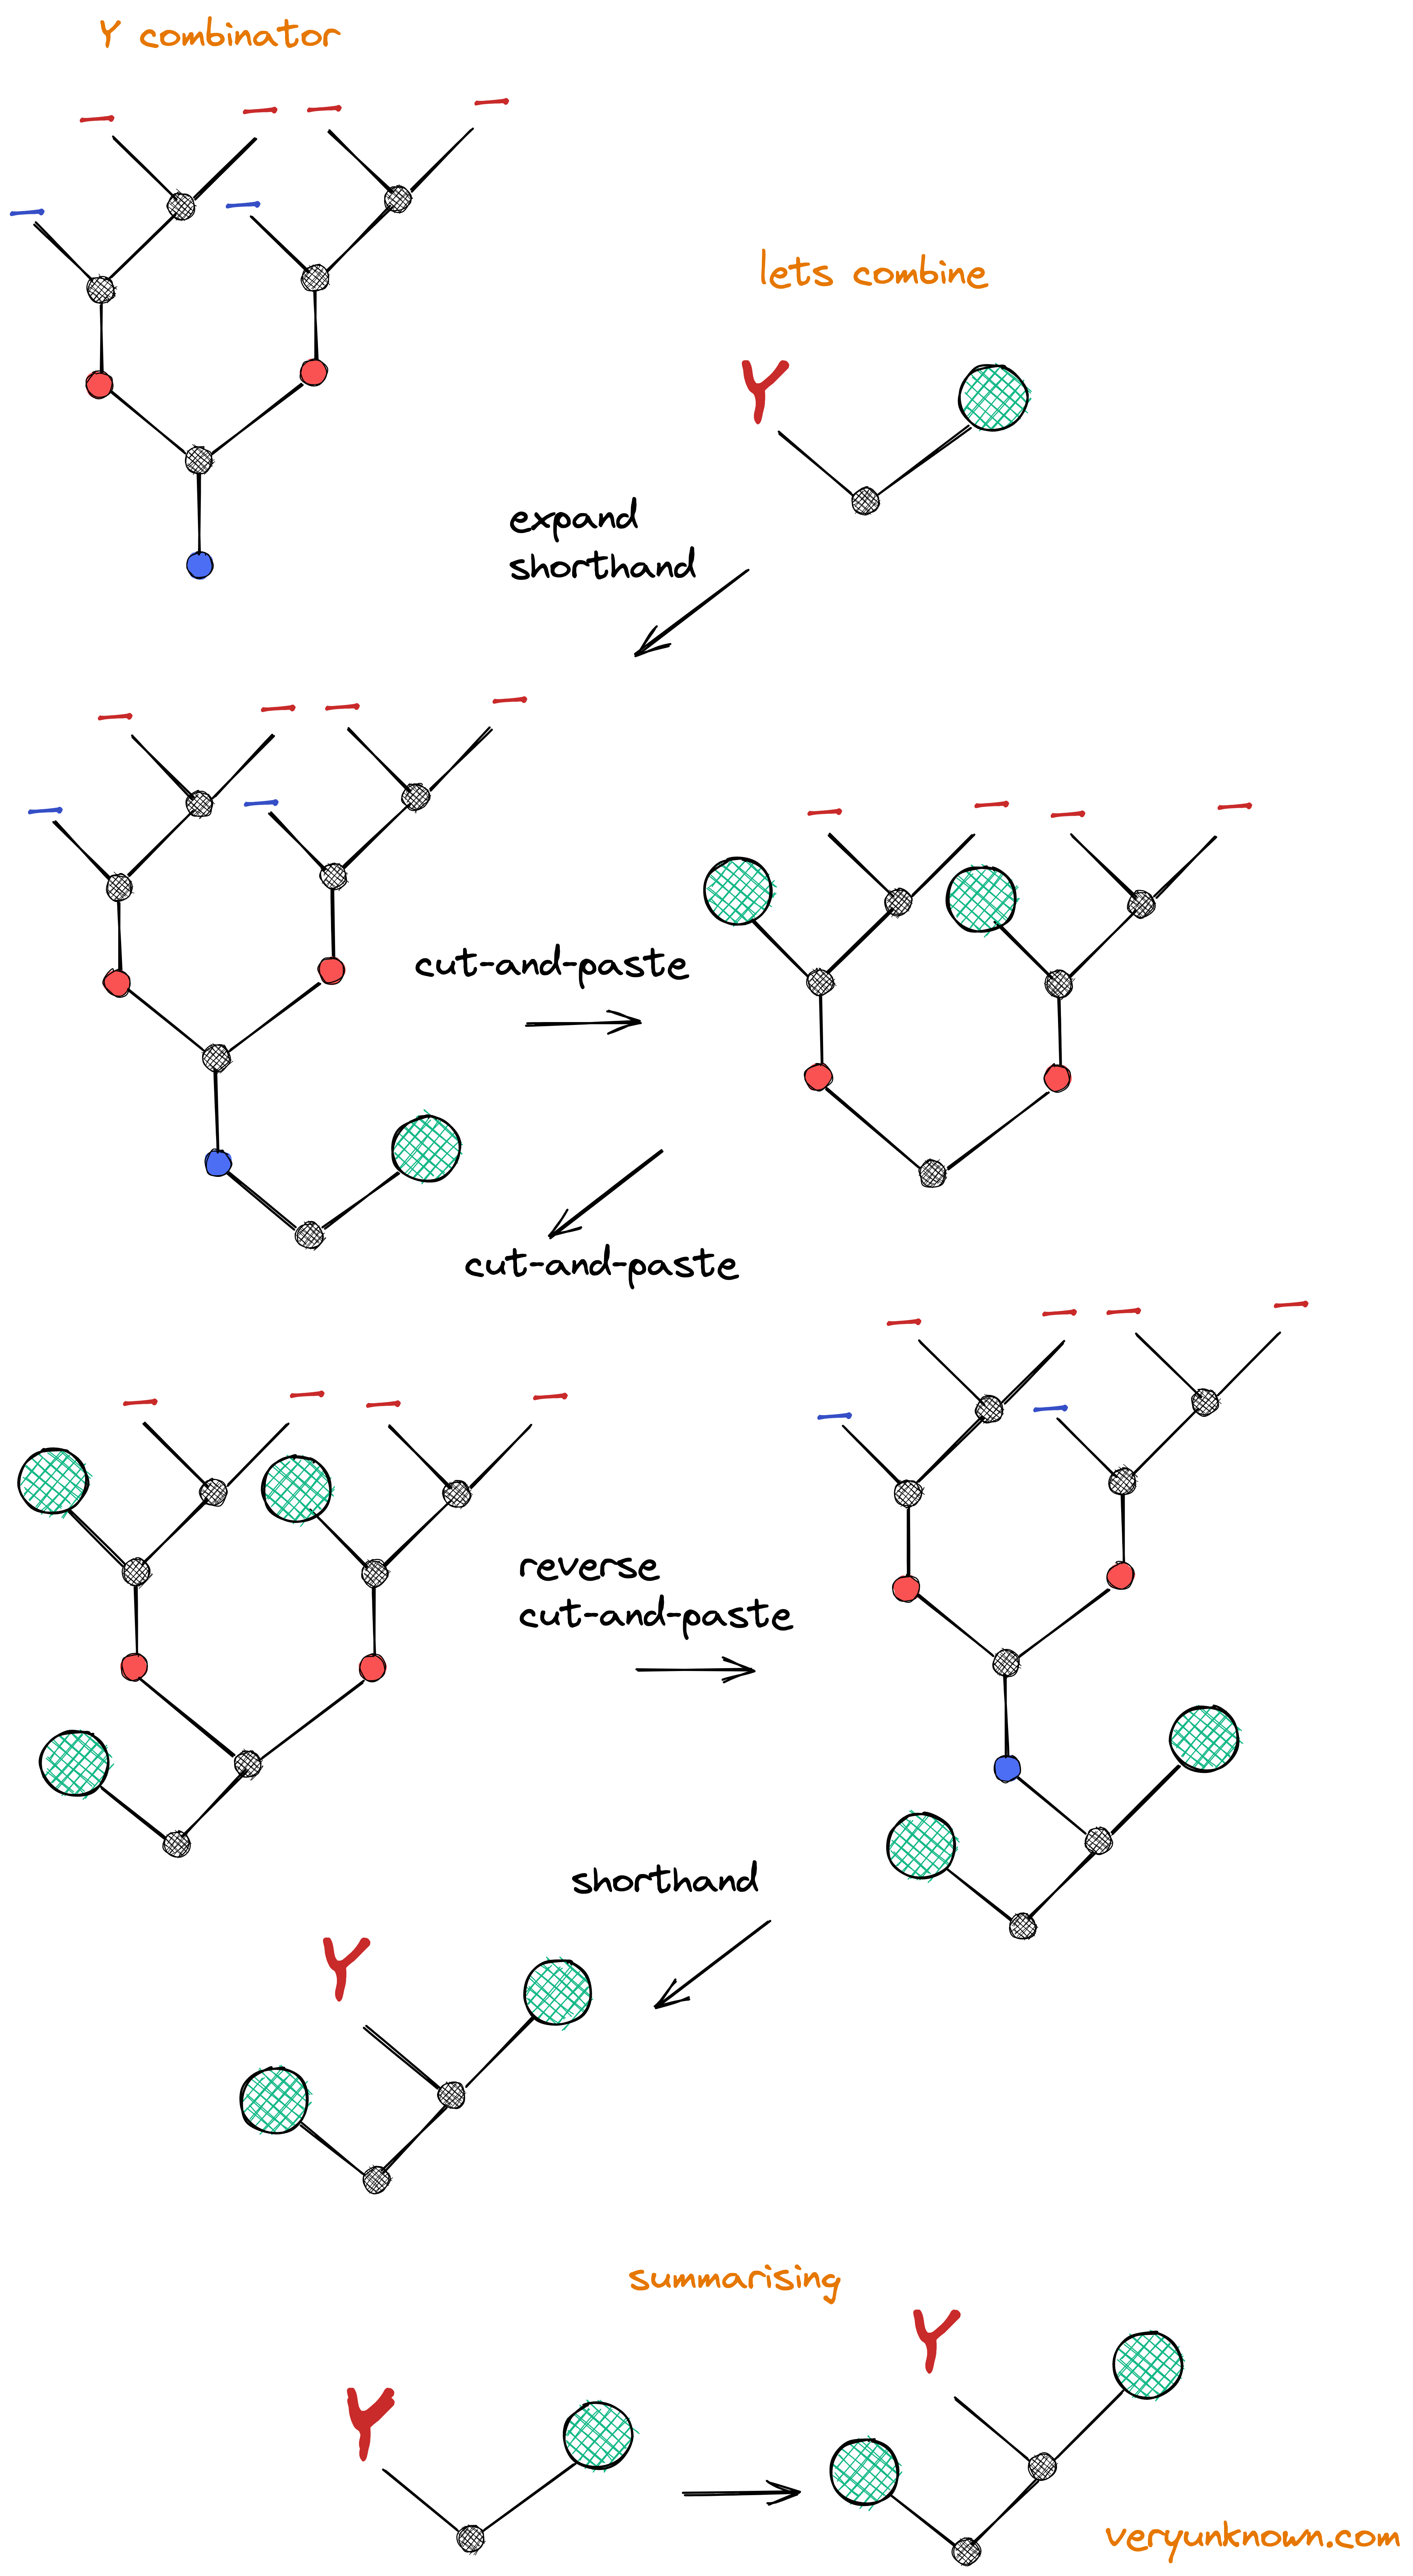 Fig 10. The Y-combinator